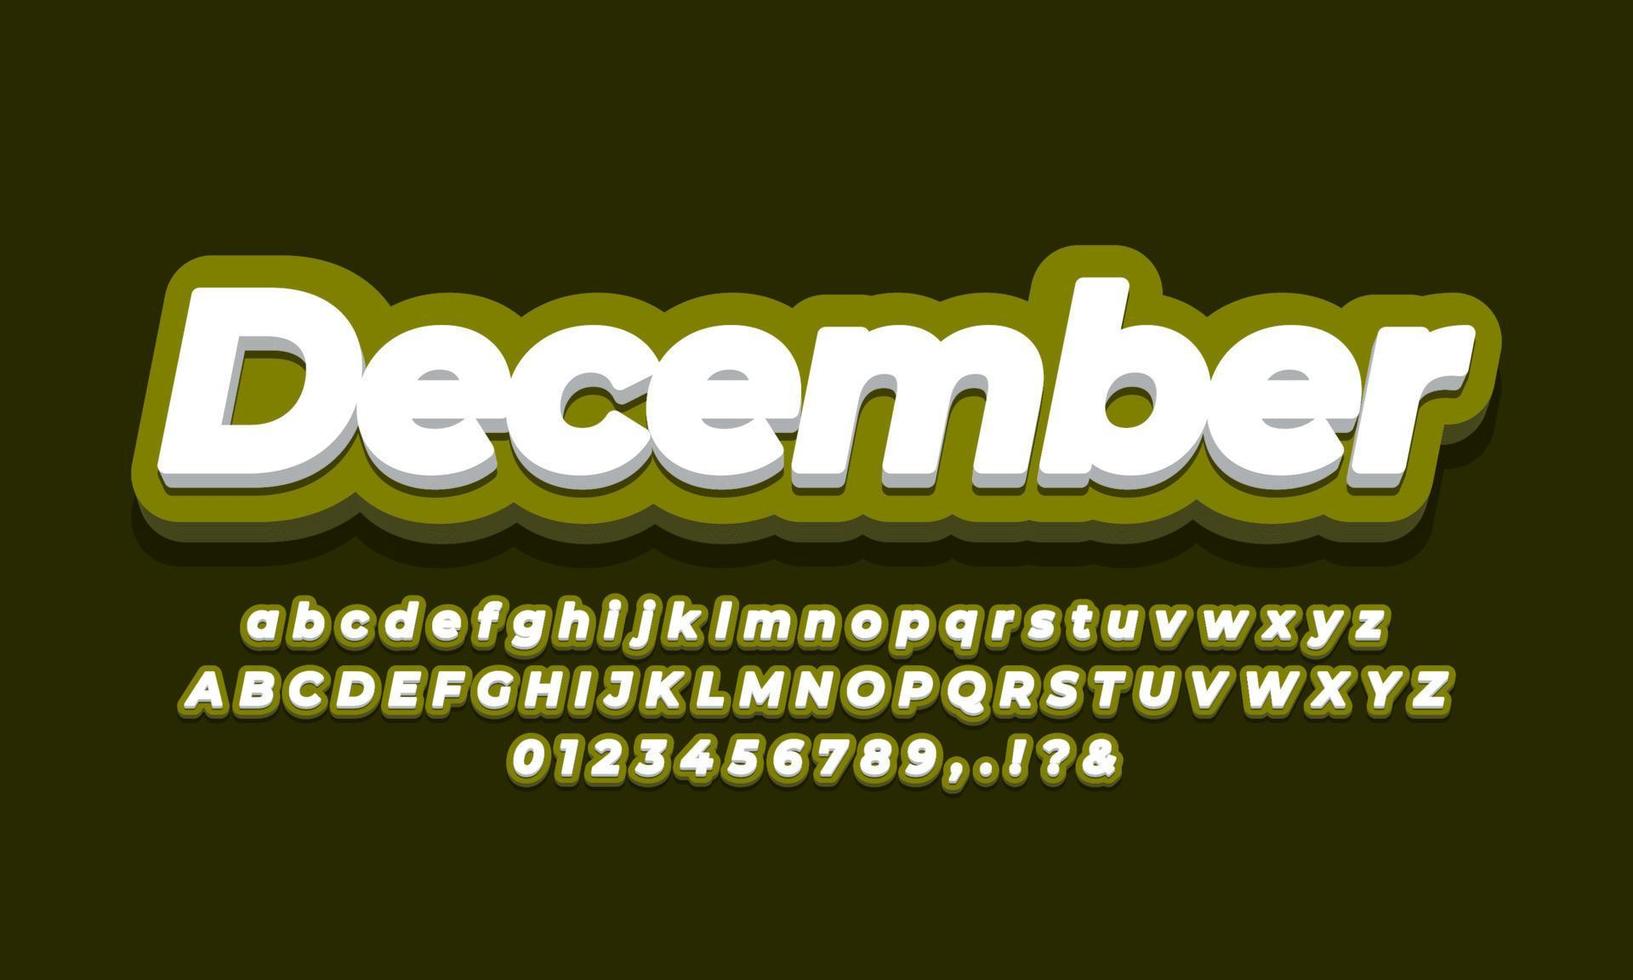 December month text  3d green design vector